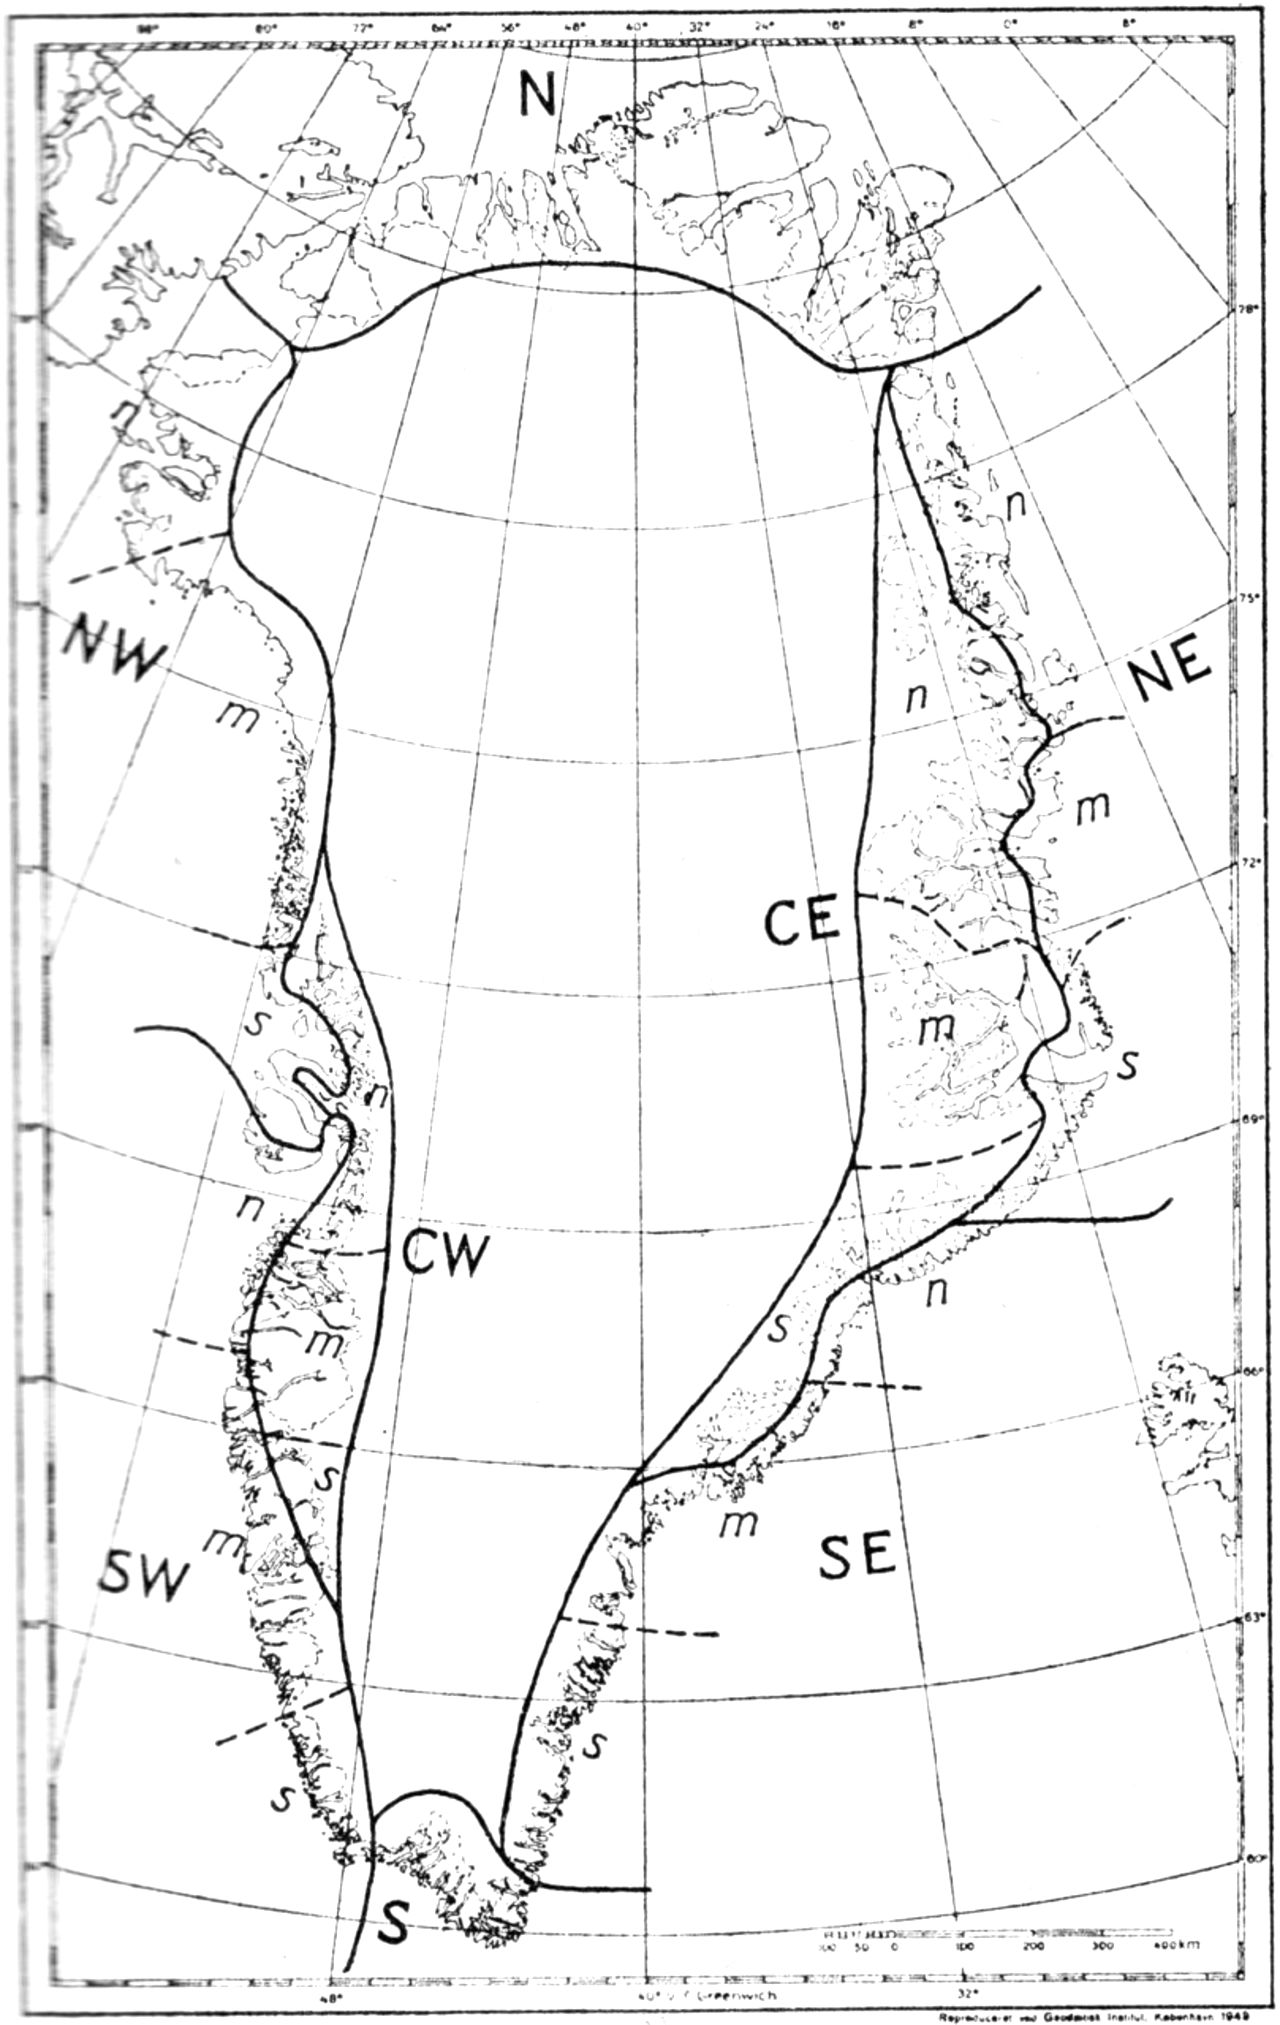 (Kort). Inddeling af Grønland i floraprovinser (fuldt optrukne grænser) og floristiske distrikter (stiplede grænser). CW kontinentale Vestgrønland, CE kontinentale Østgrønland. Små bogstaver n, m, s kendetegner henholdsvis nordl., mellemste og sydl. del af de forskellige floraprovinser.